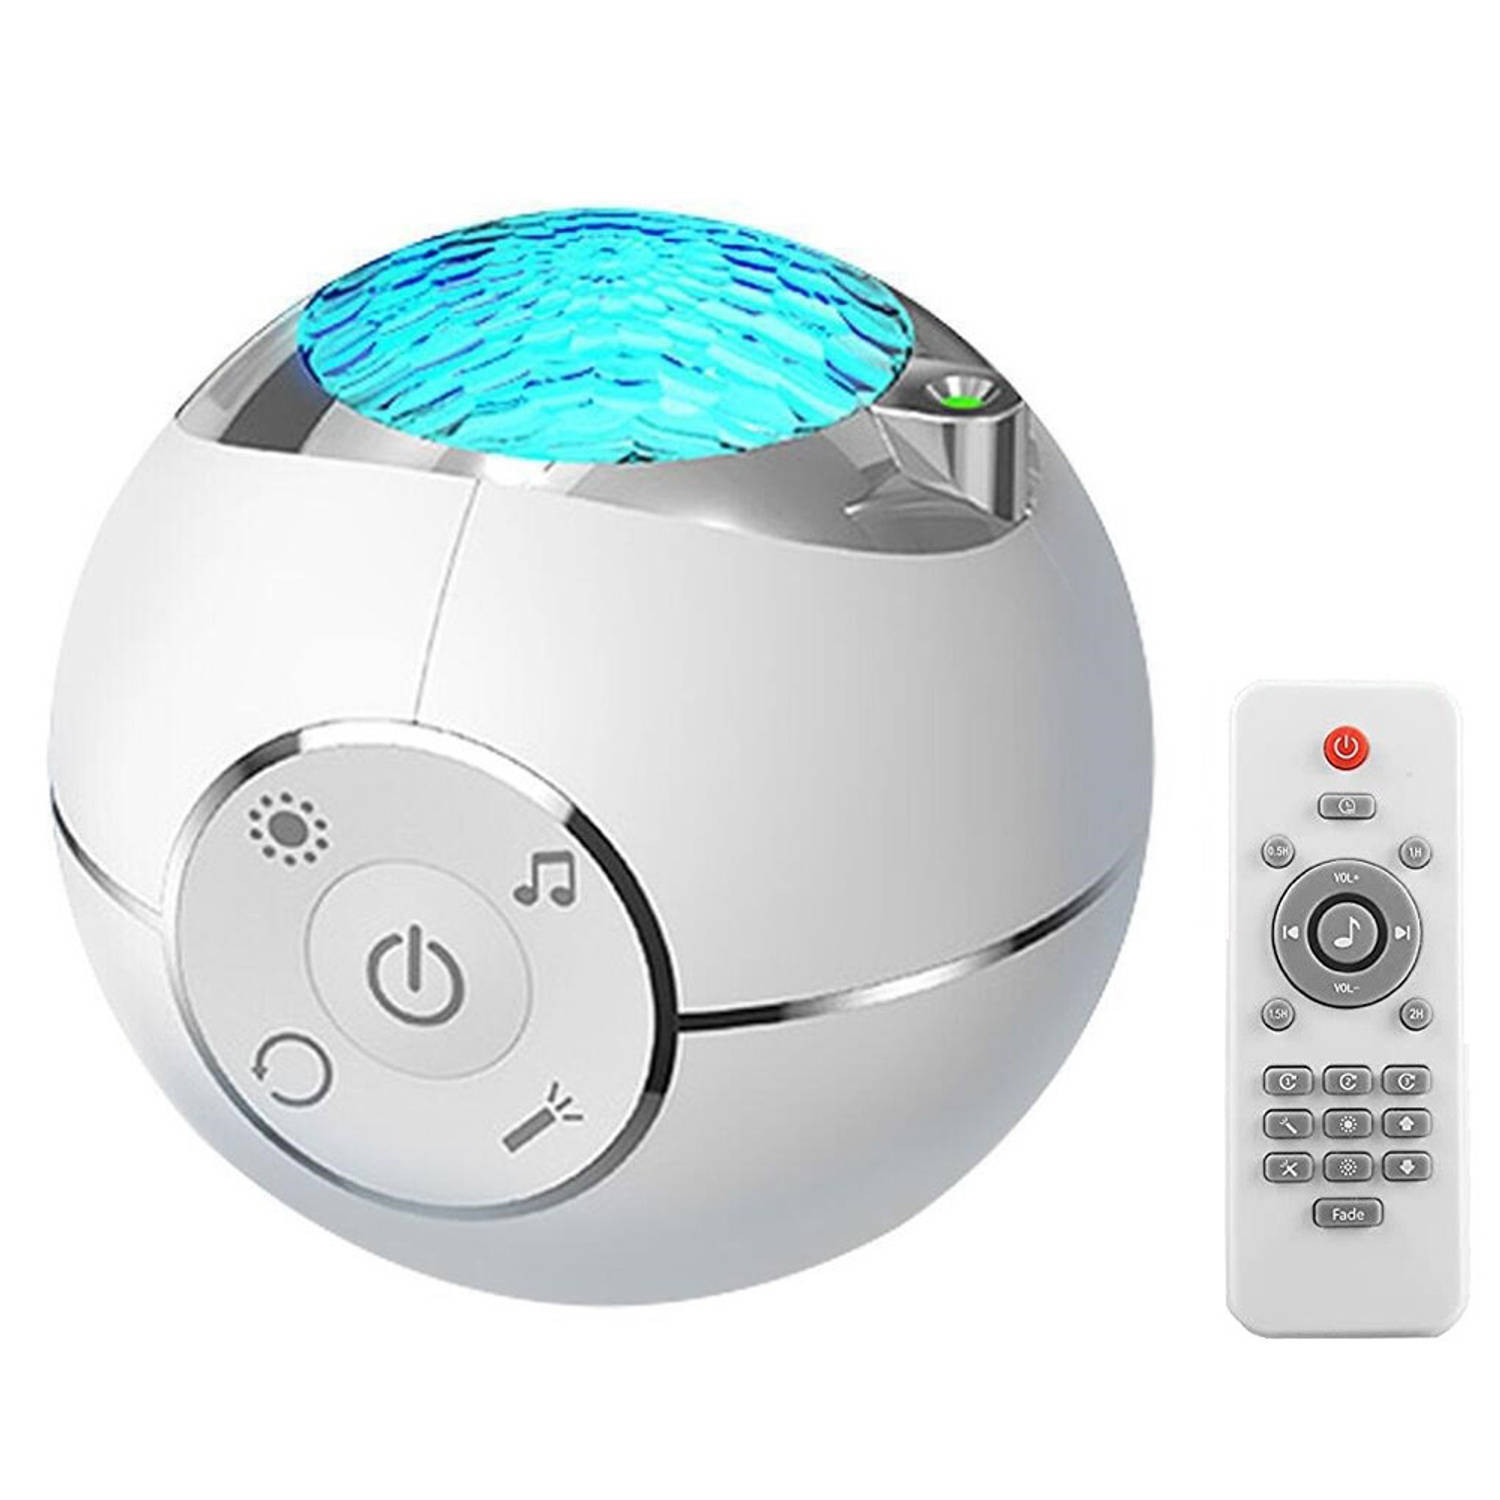 Homezie Sterren projector - Bluetooth speaker - Met afstandsbediening - Galaxy projector - Sterrenhemel projector